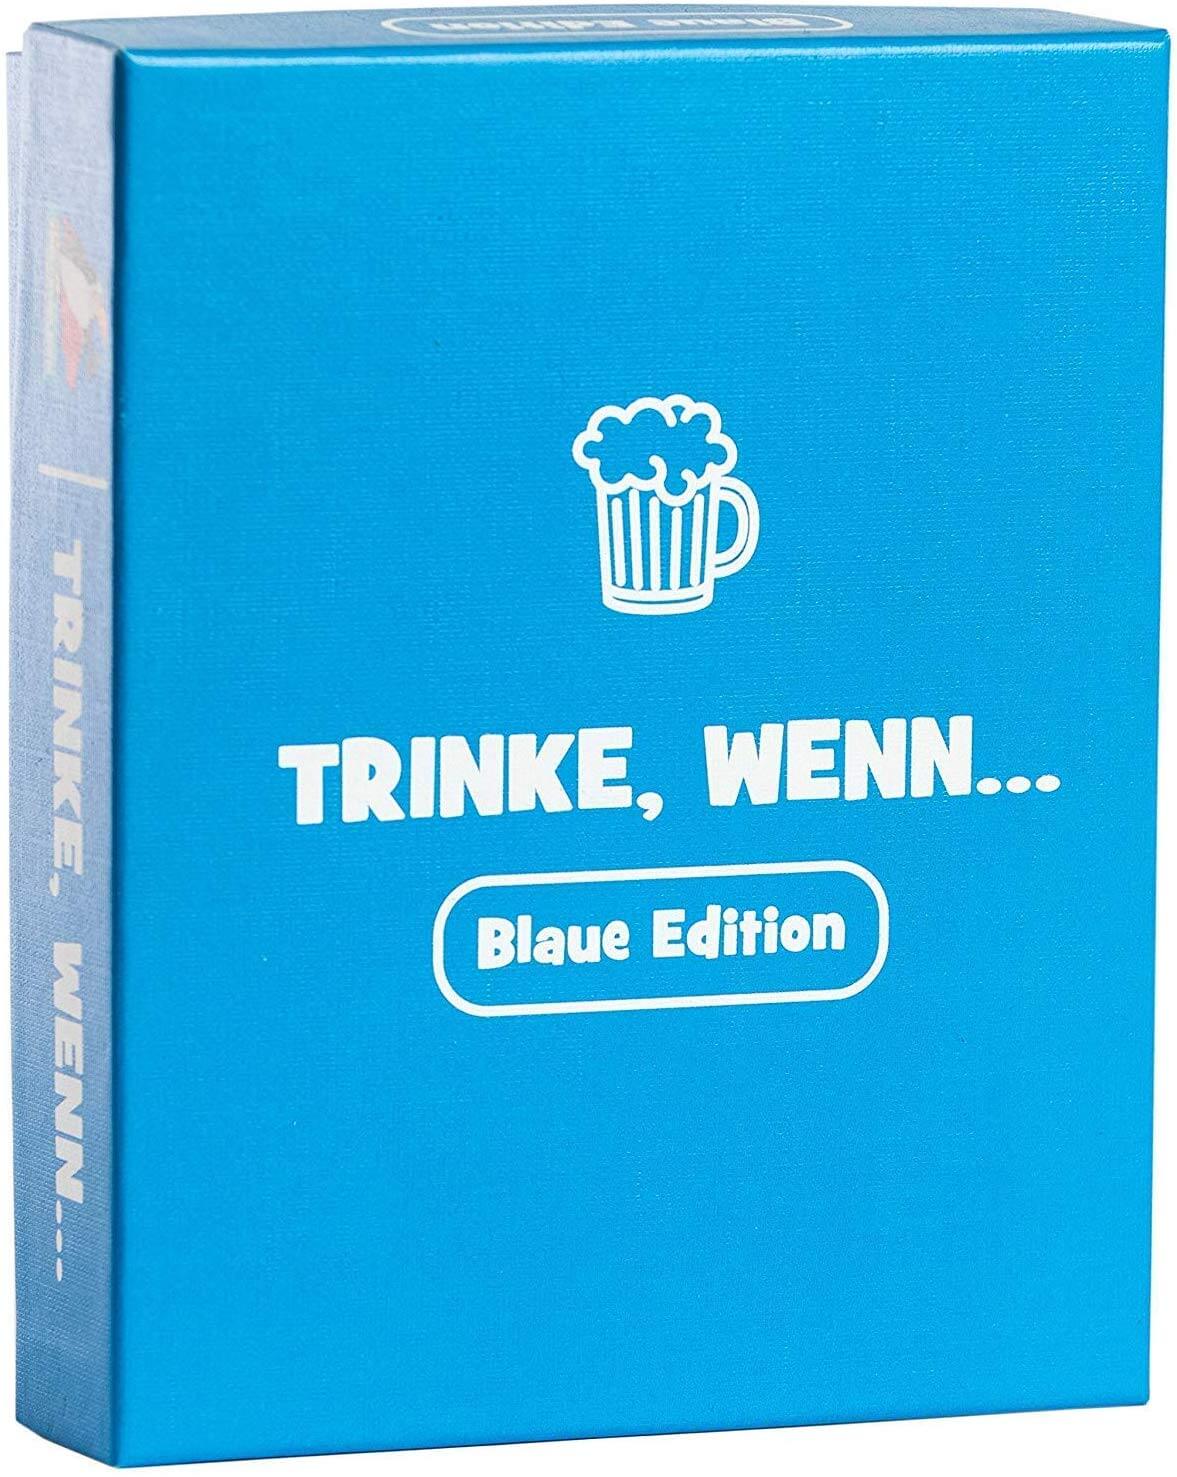 Trinkspiele mit Hangover Garantie (German Edition)